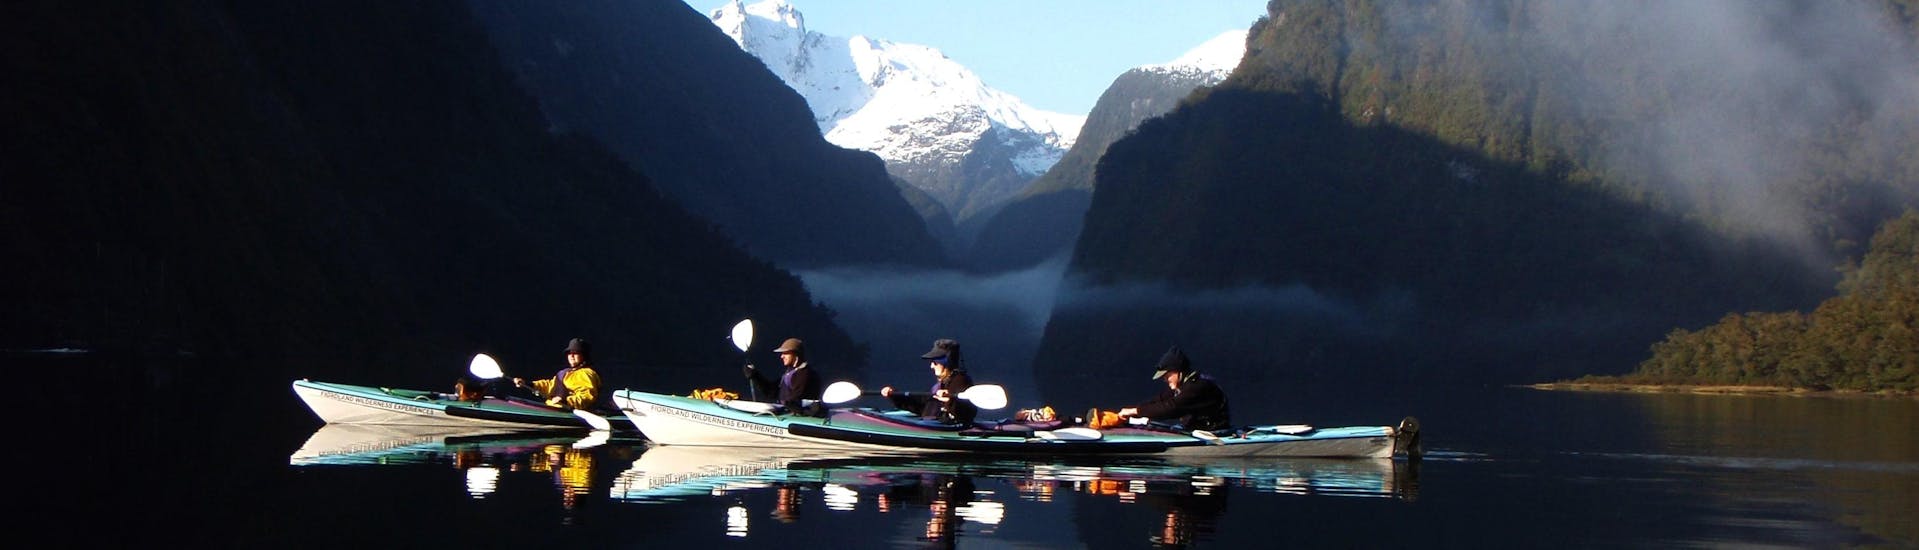 Leichte Kayak & Kanu-Tour - Doubtful Sound Fjord.